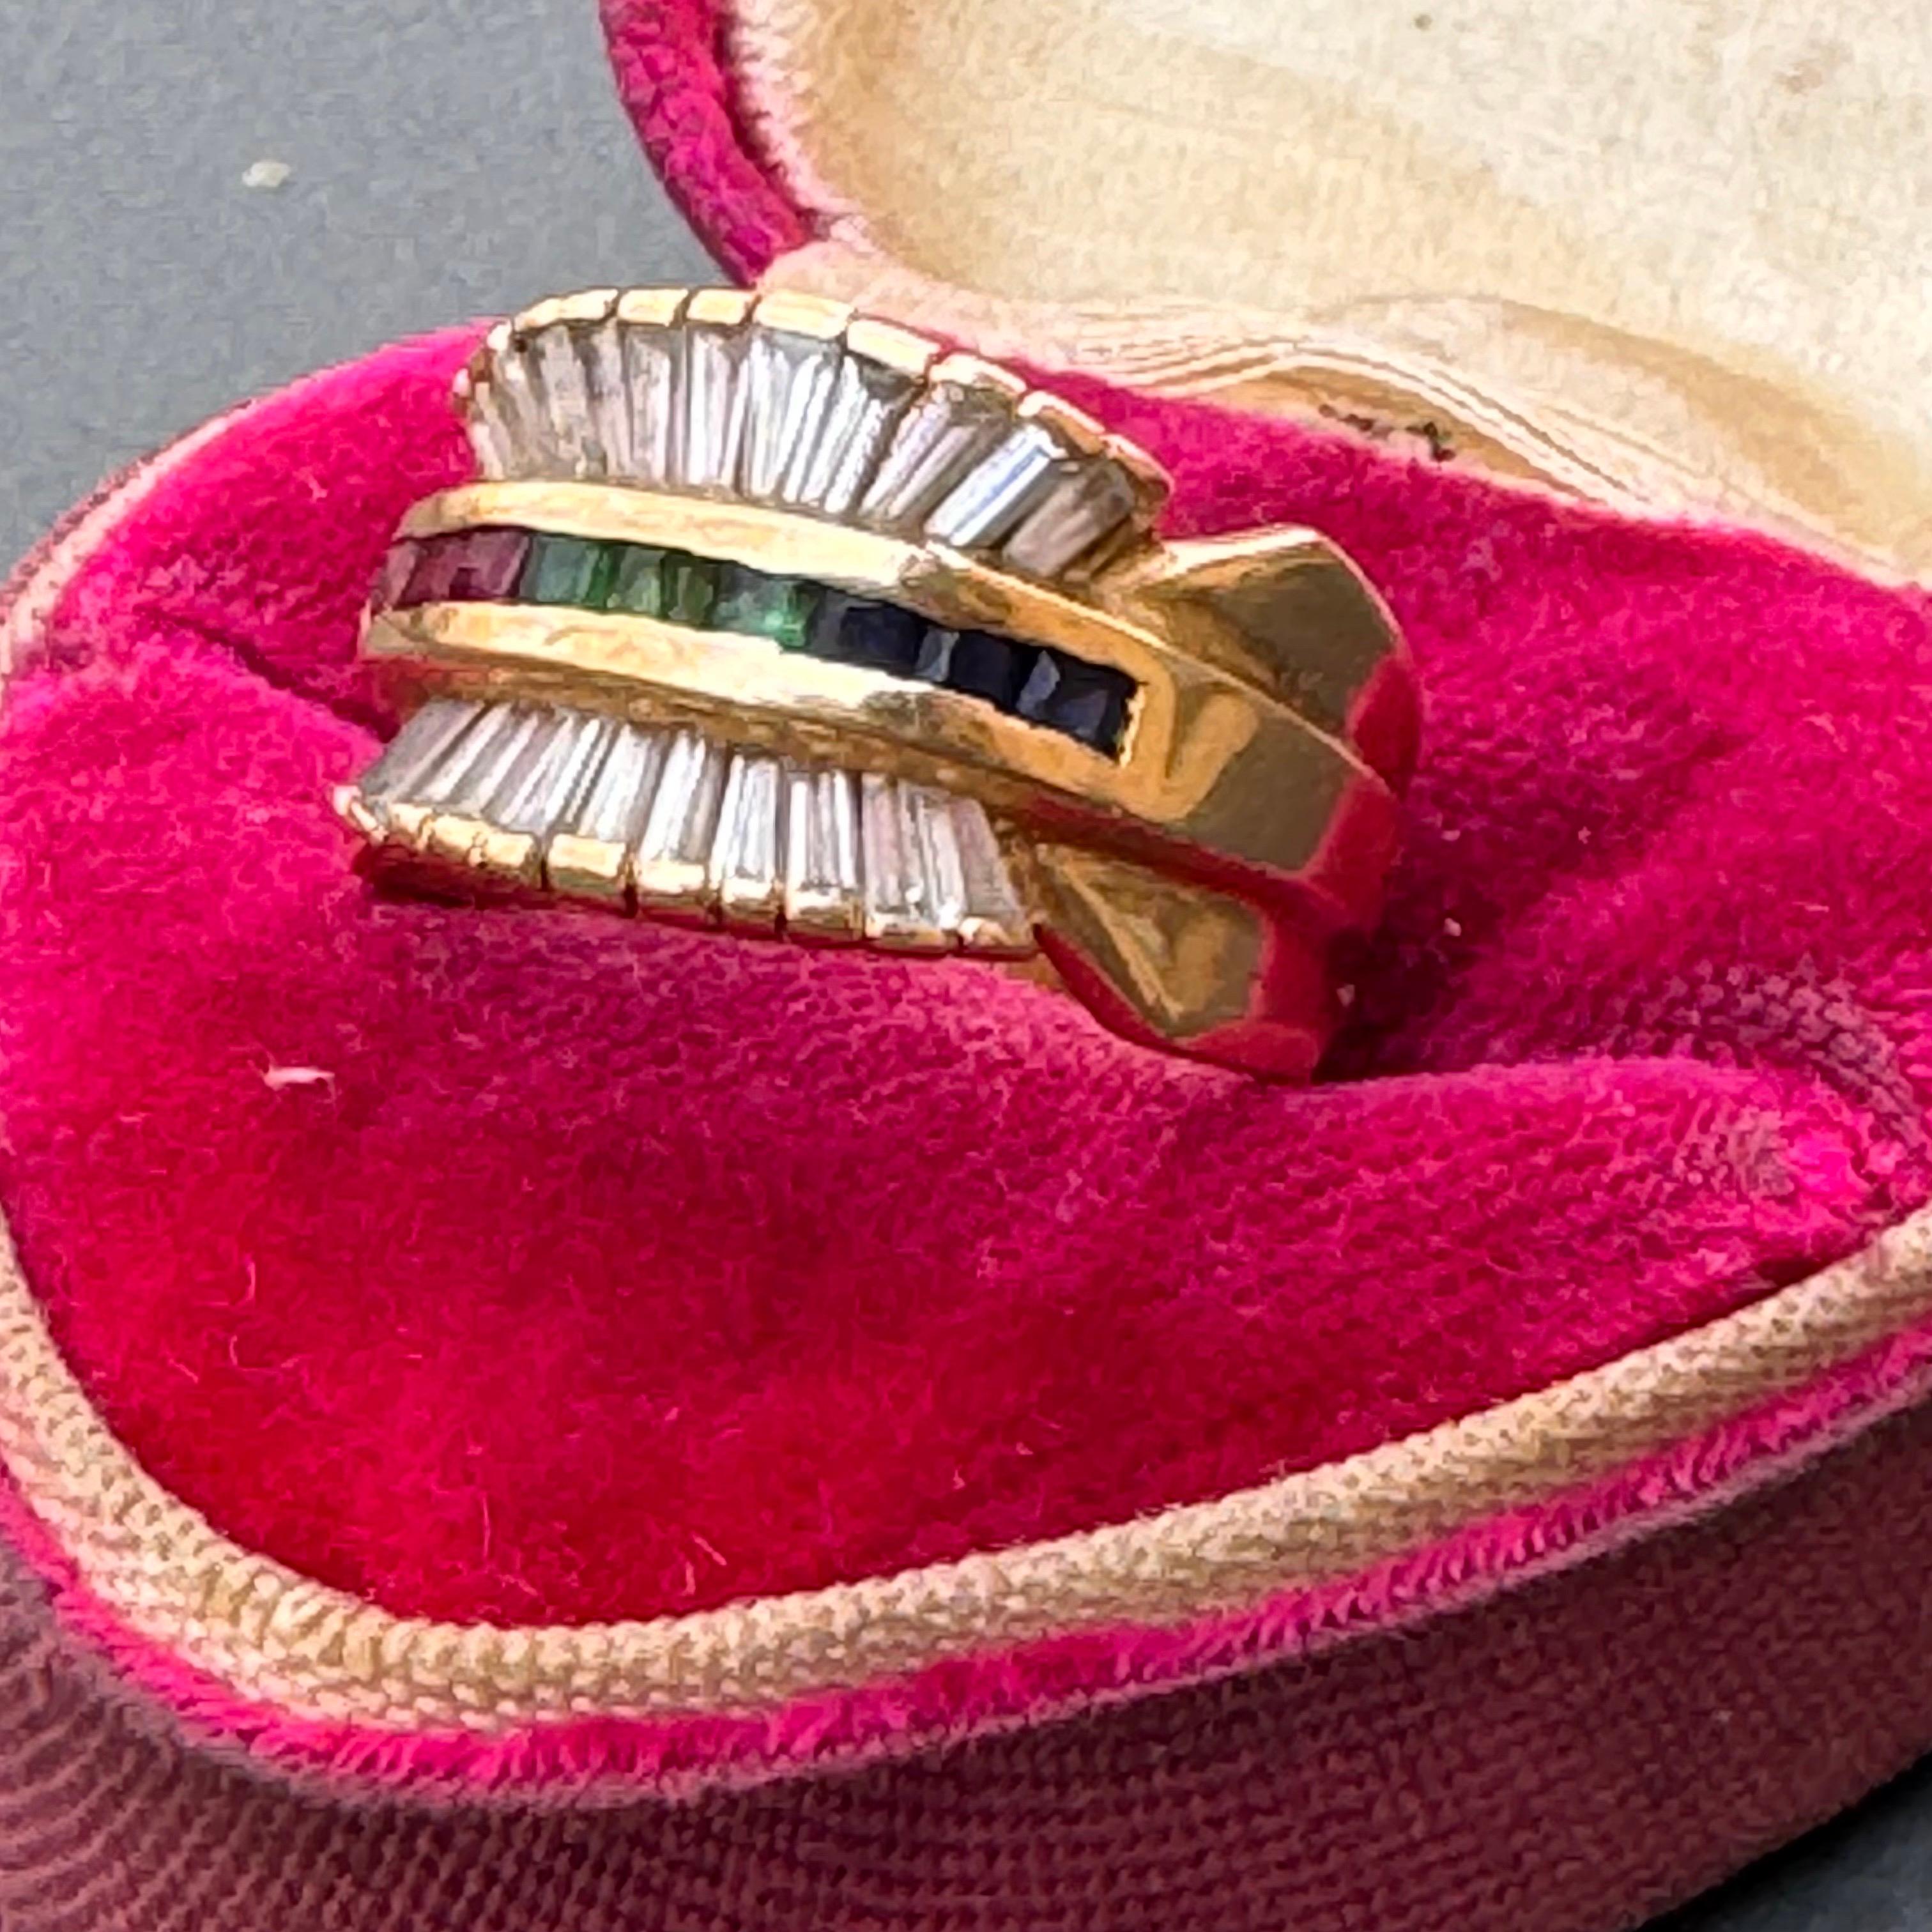 Vintage handgefertigt 18kt massivem Gelbgold Zigarre Band Stil Ring mit weißen Saphir Baguettes und Labor erstellt farbigen Steinen in der Mitte. 
Höchstwahrscheinlich in Indien hergestellt.

Daten : Ende des 20. Jahrhunderts

Abmessungen:
Ring